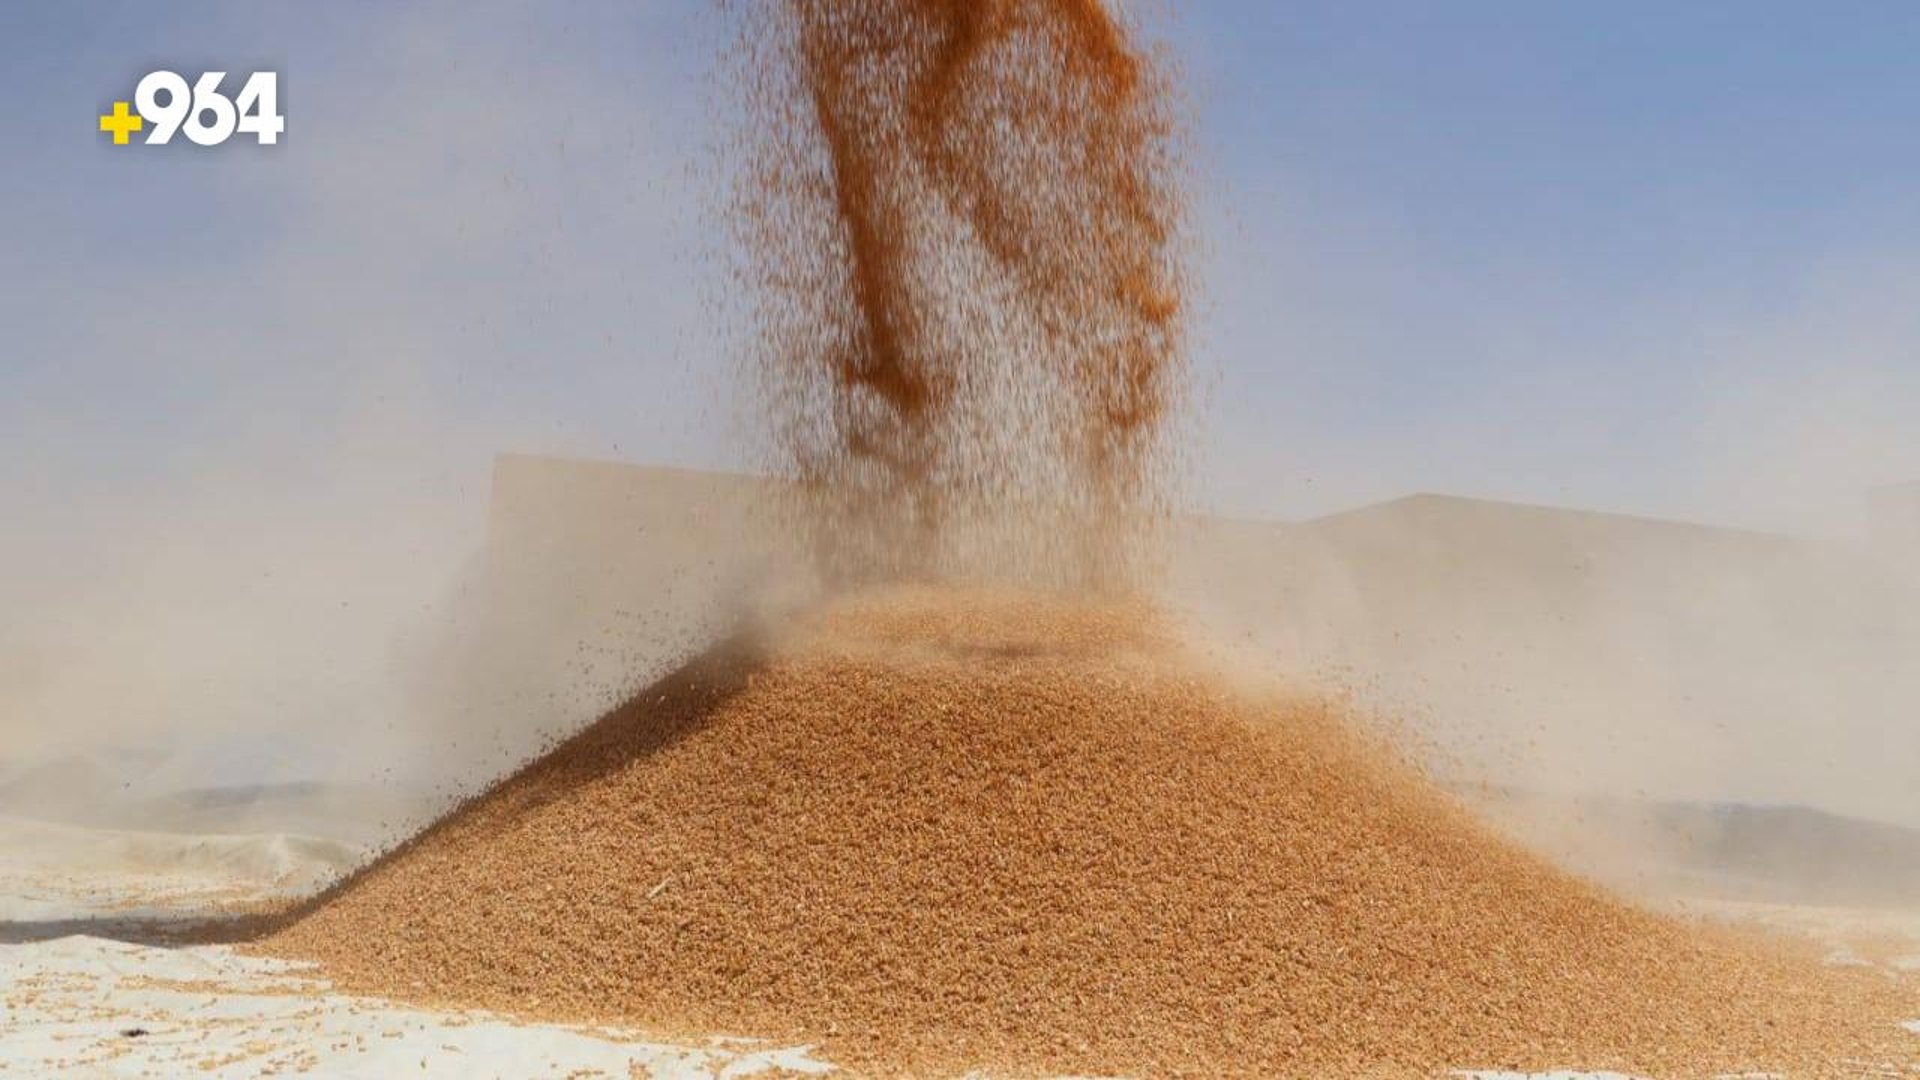 المجلس الاقتصادي يحدد سعر طن الحنطة هذا الموسم بمبلغ 850 ألف دينار